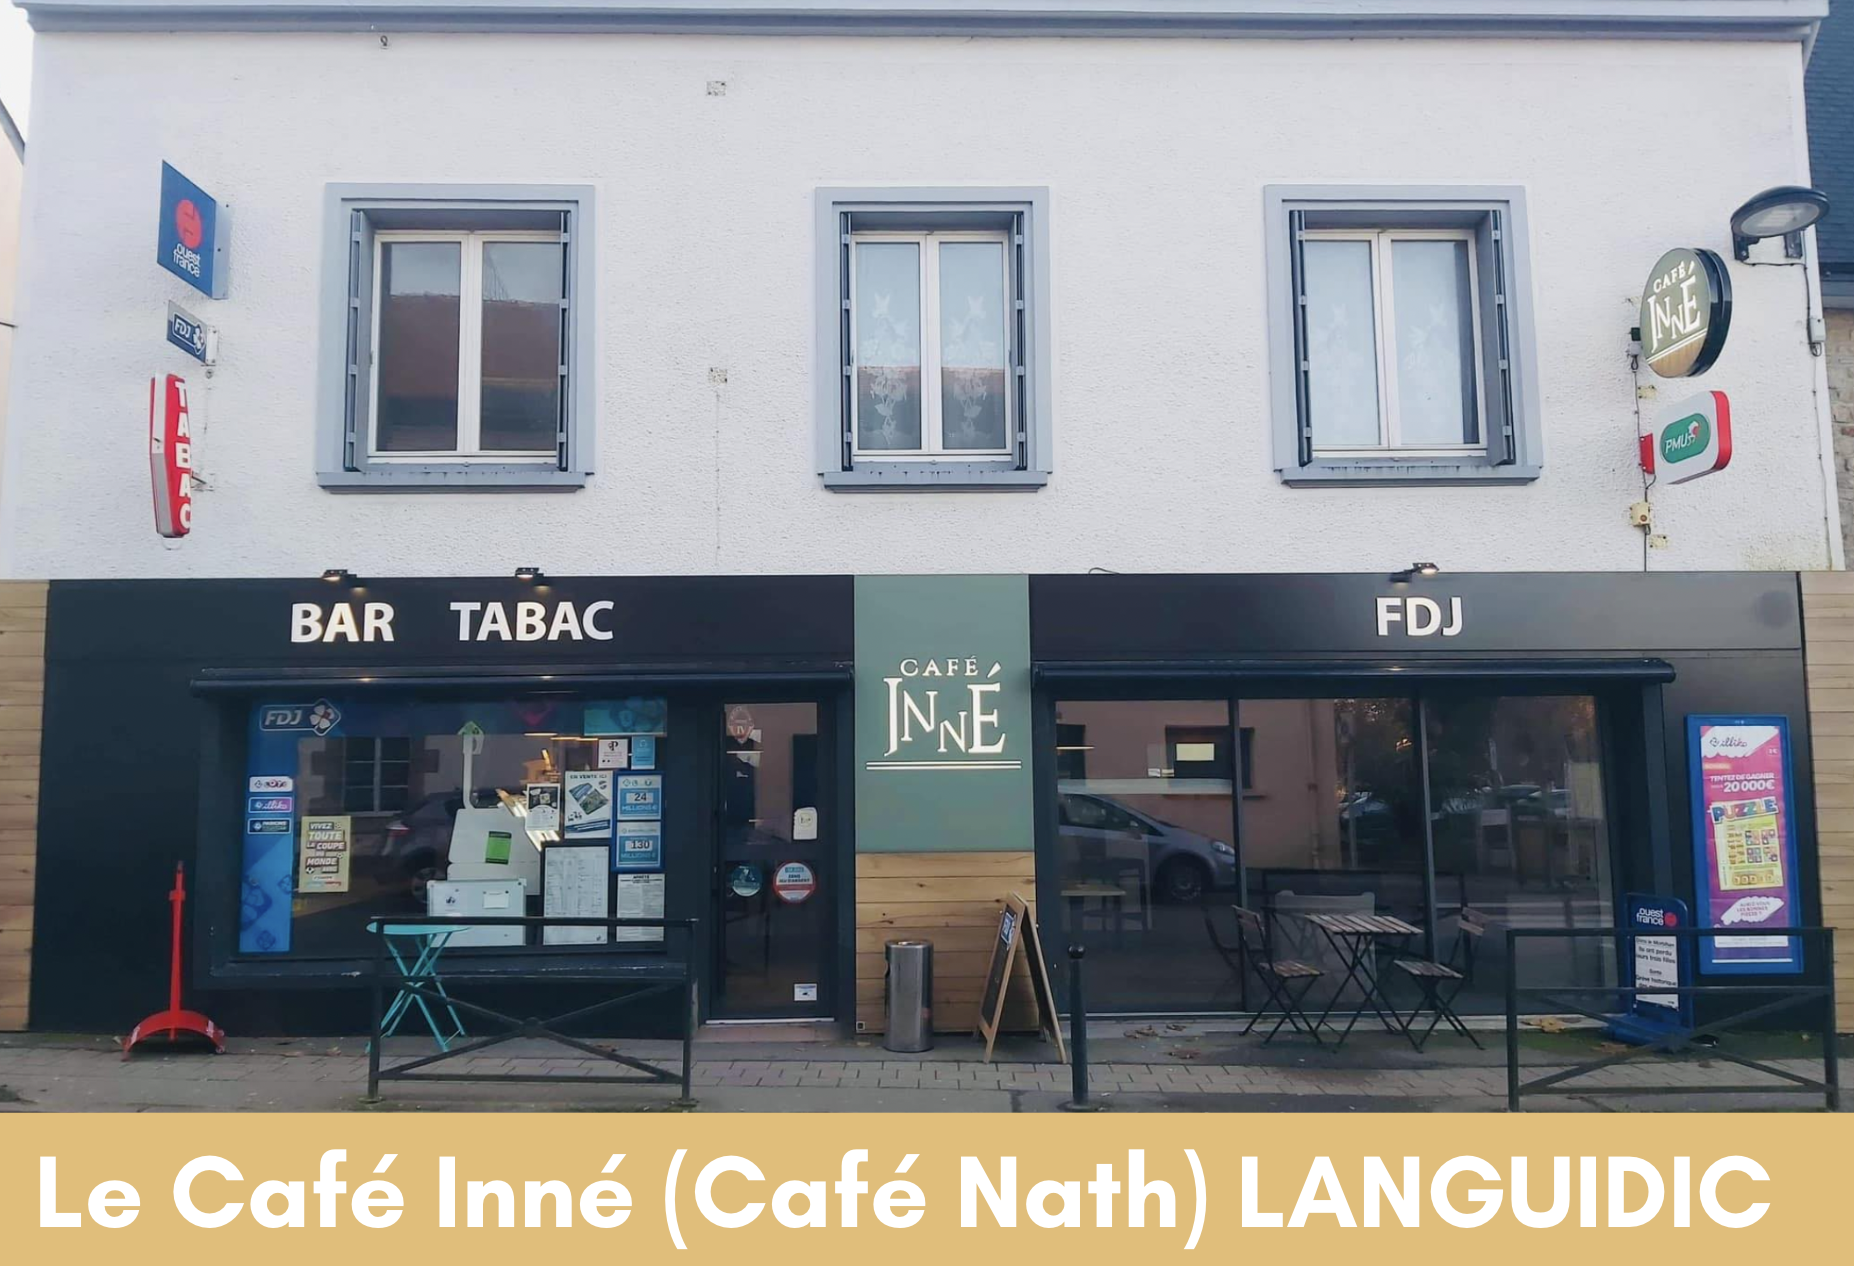 La Café Inné LANGUIDIC